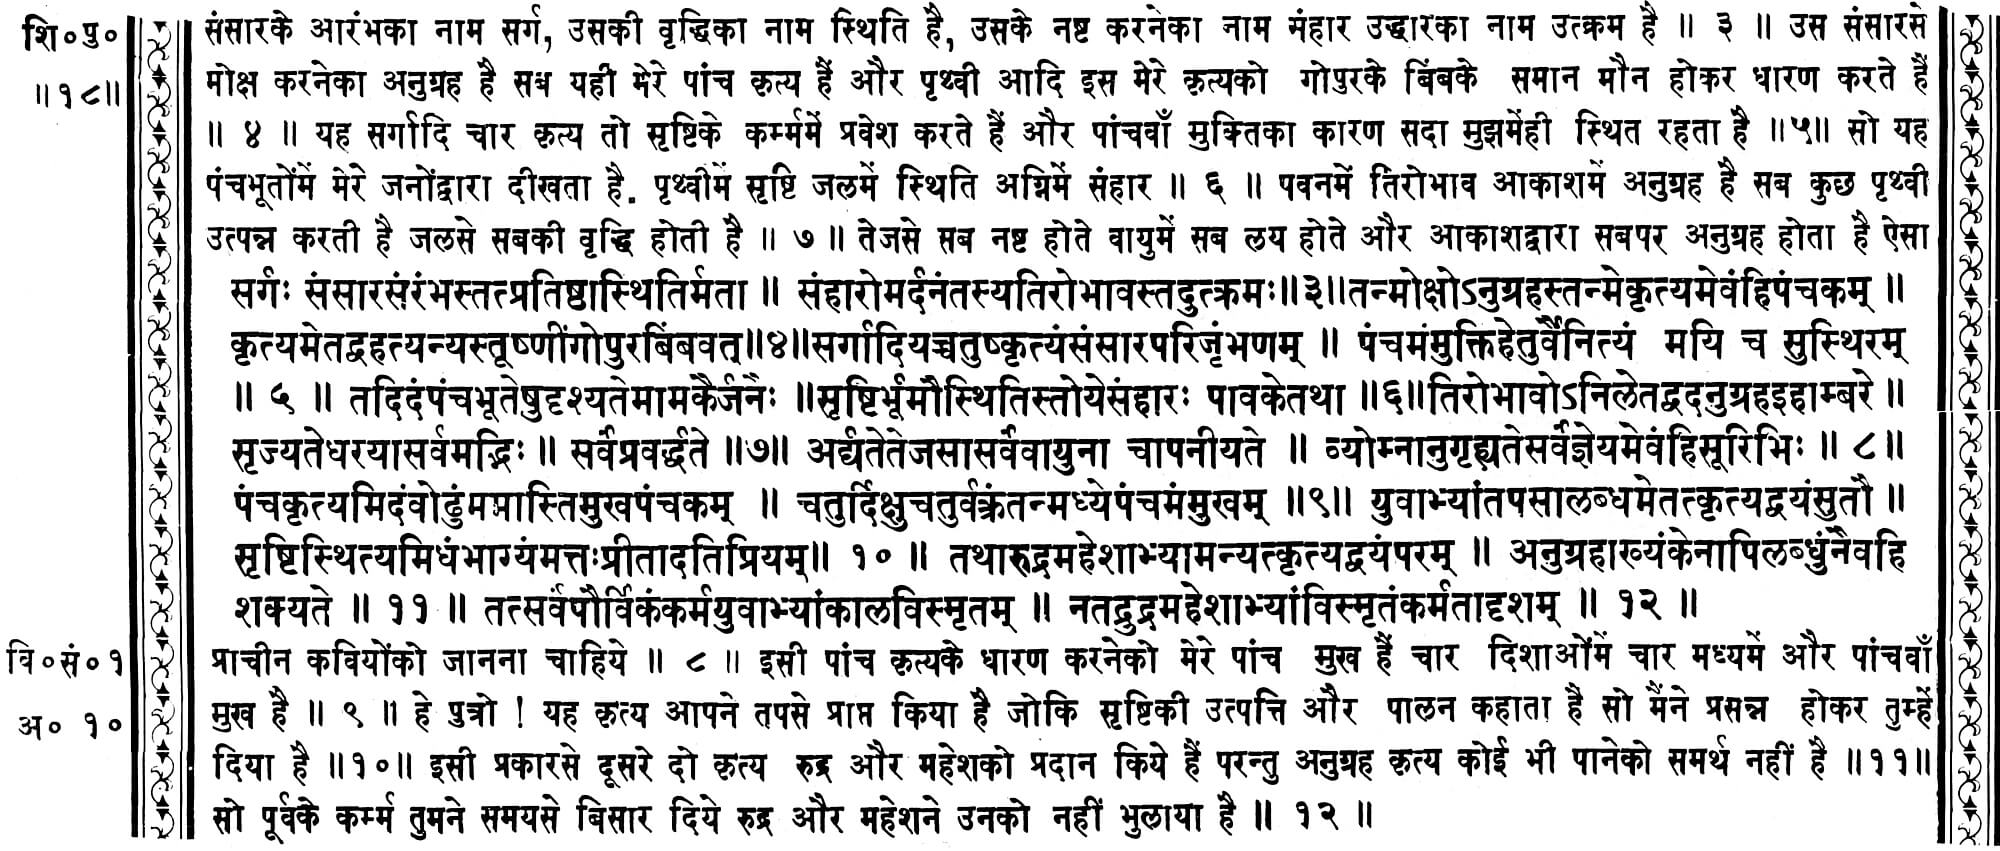 Shiv Maha Puran Vidhweshvar Samhita